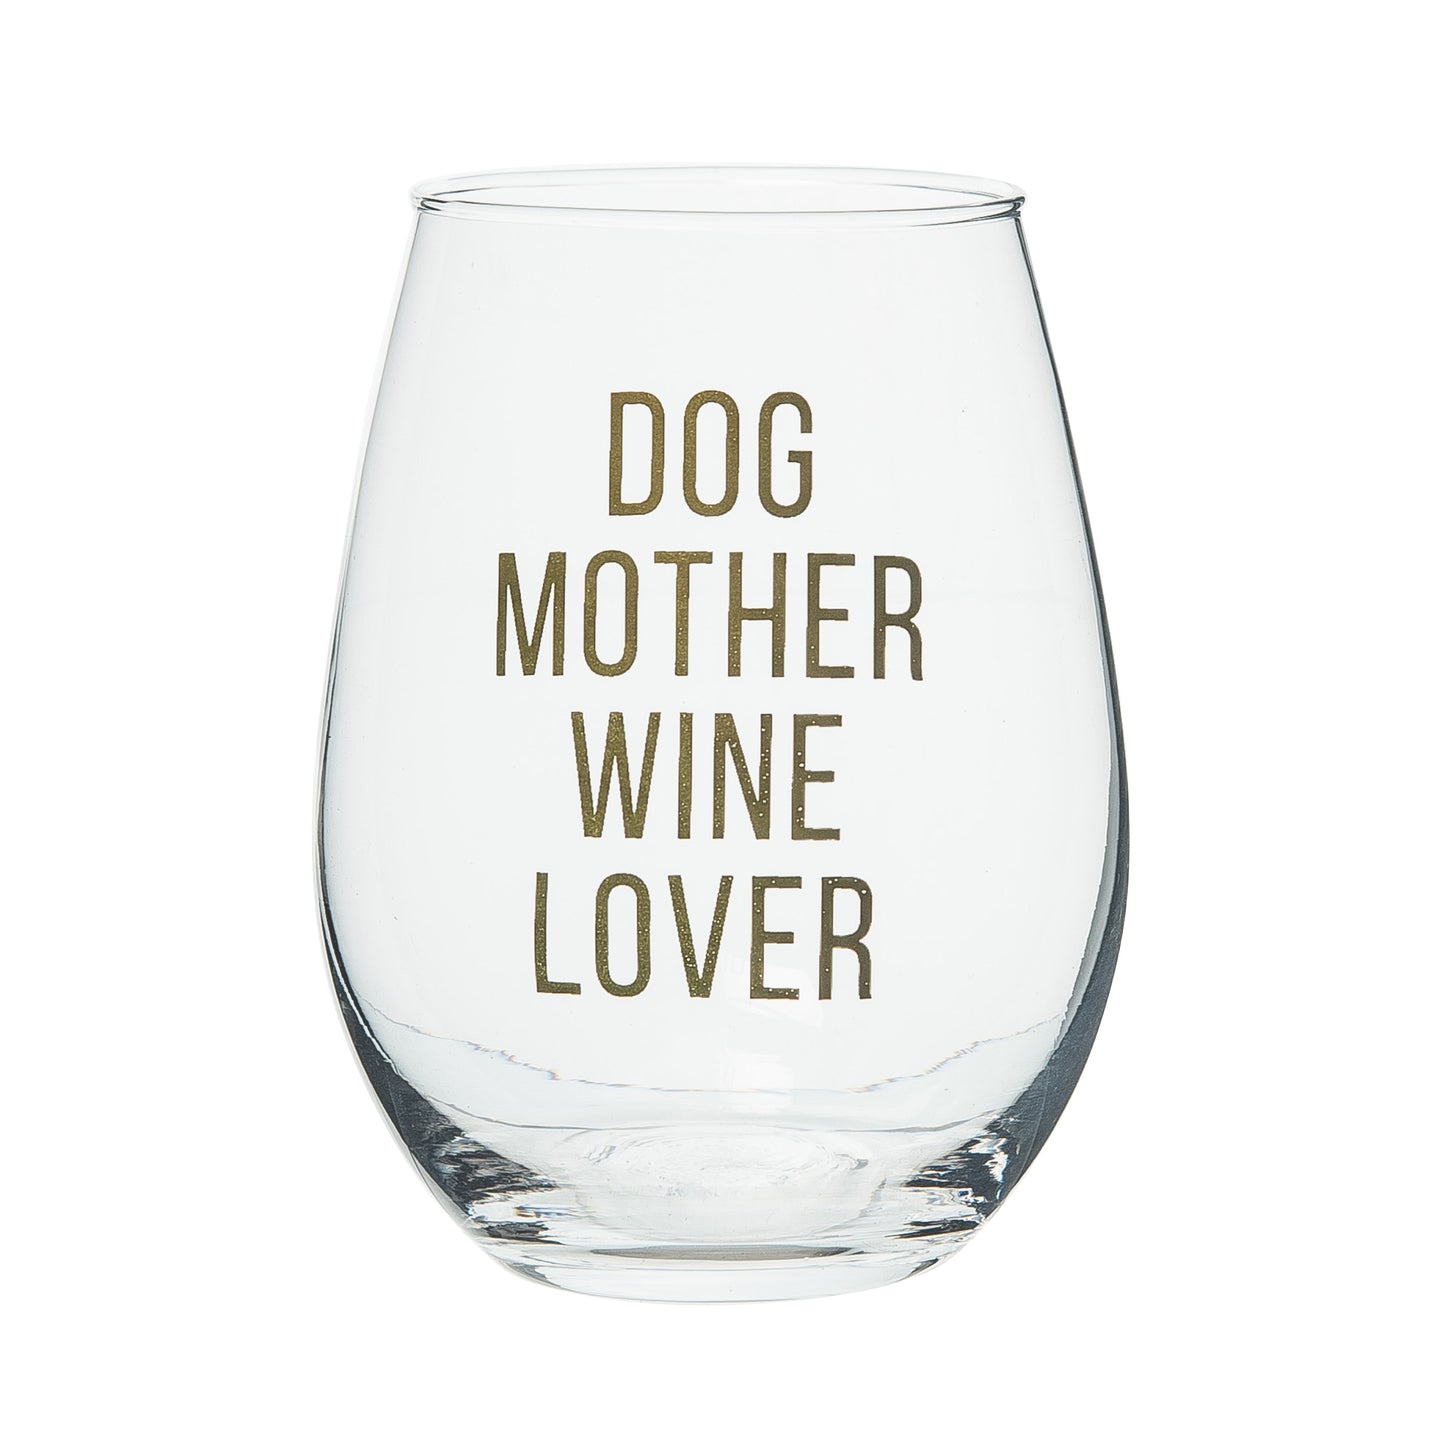 DOG MOTHER WINE LOVER